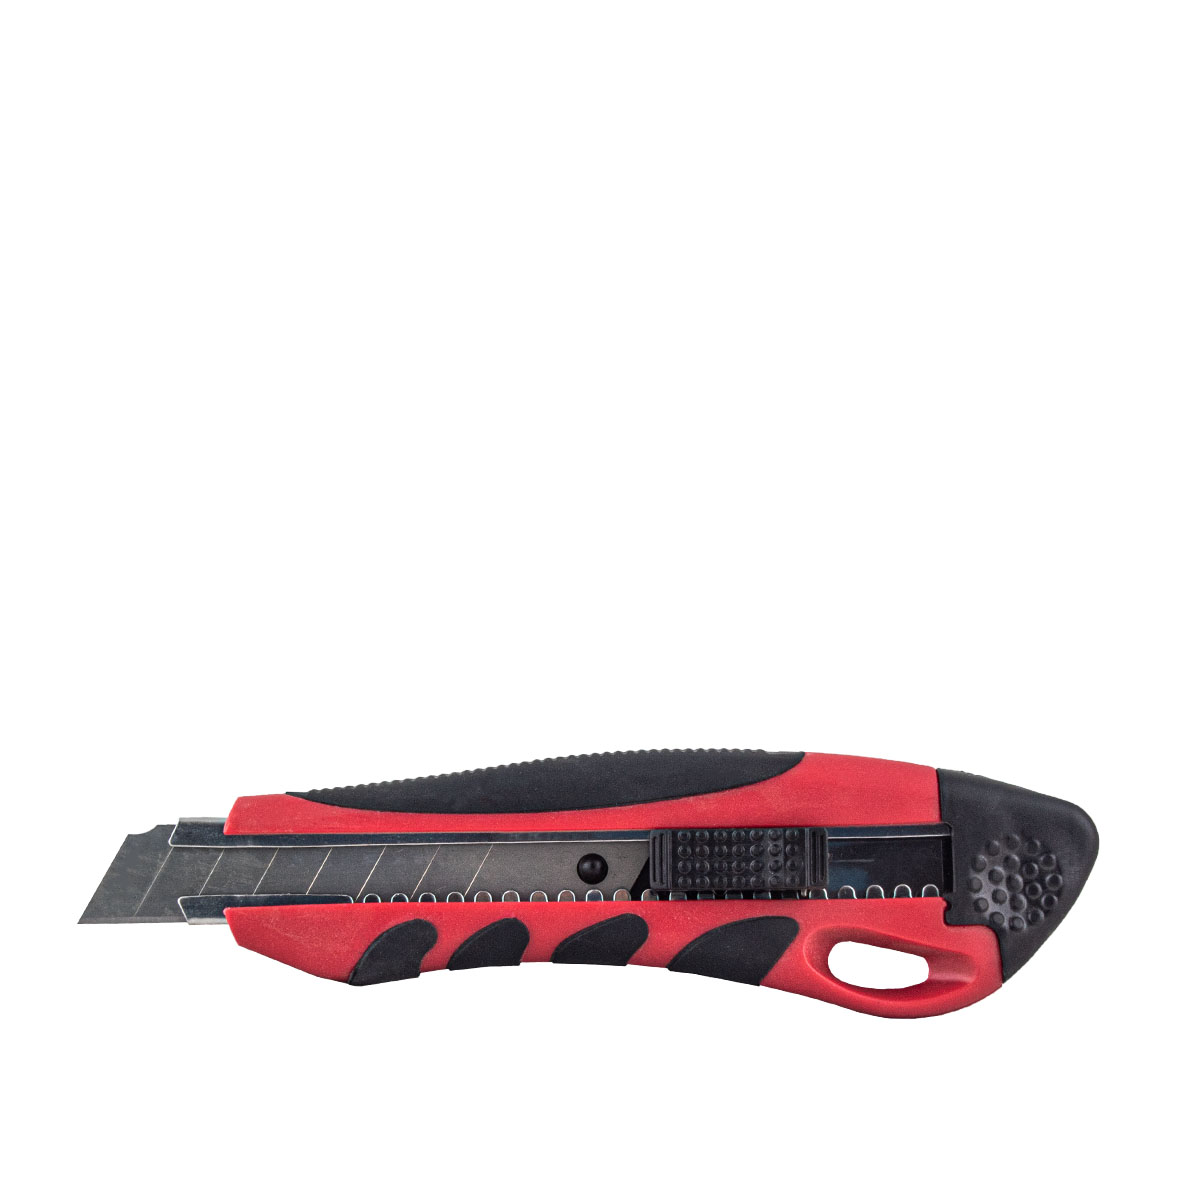 Cuttermesser Duoplast 18mm rot/schwarz mit Sicherheits-Stoptaste